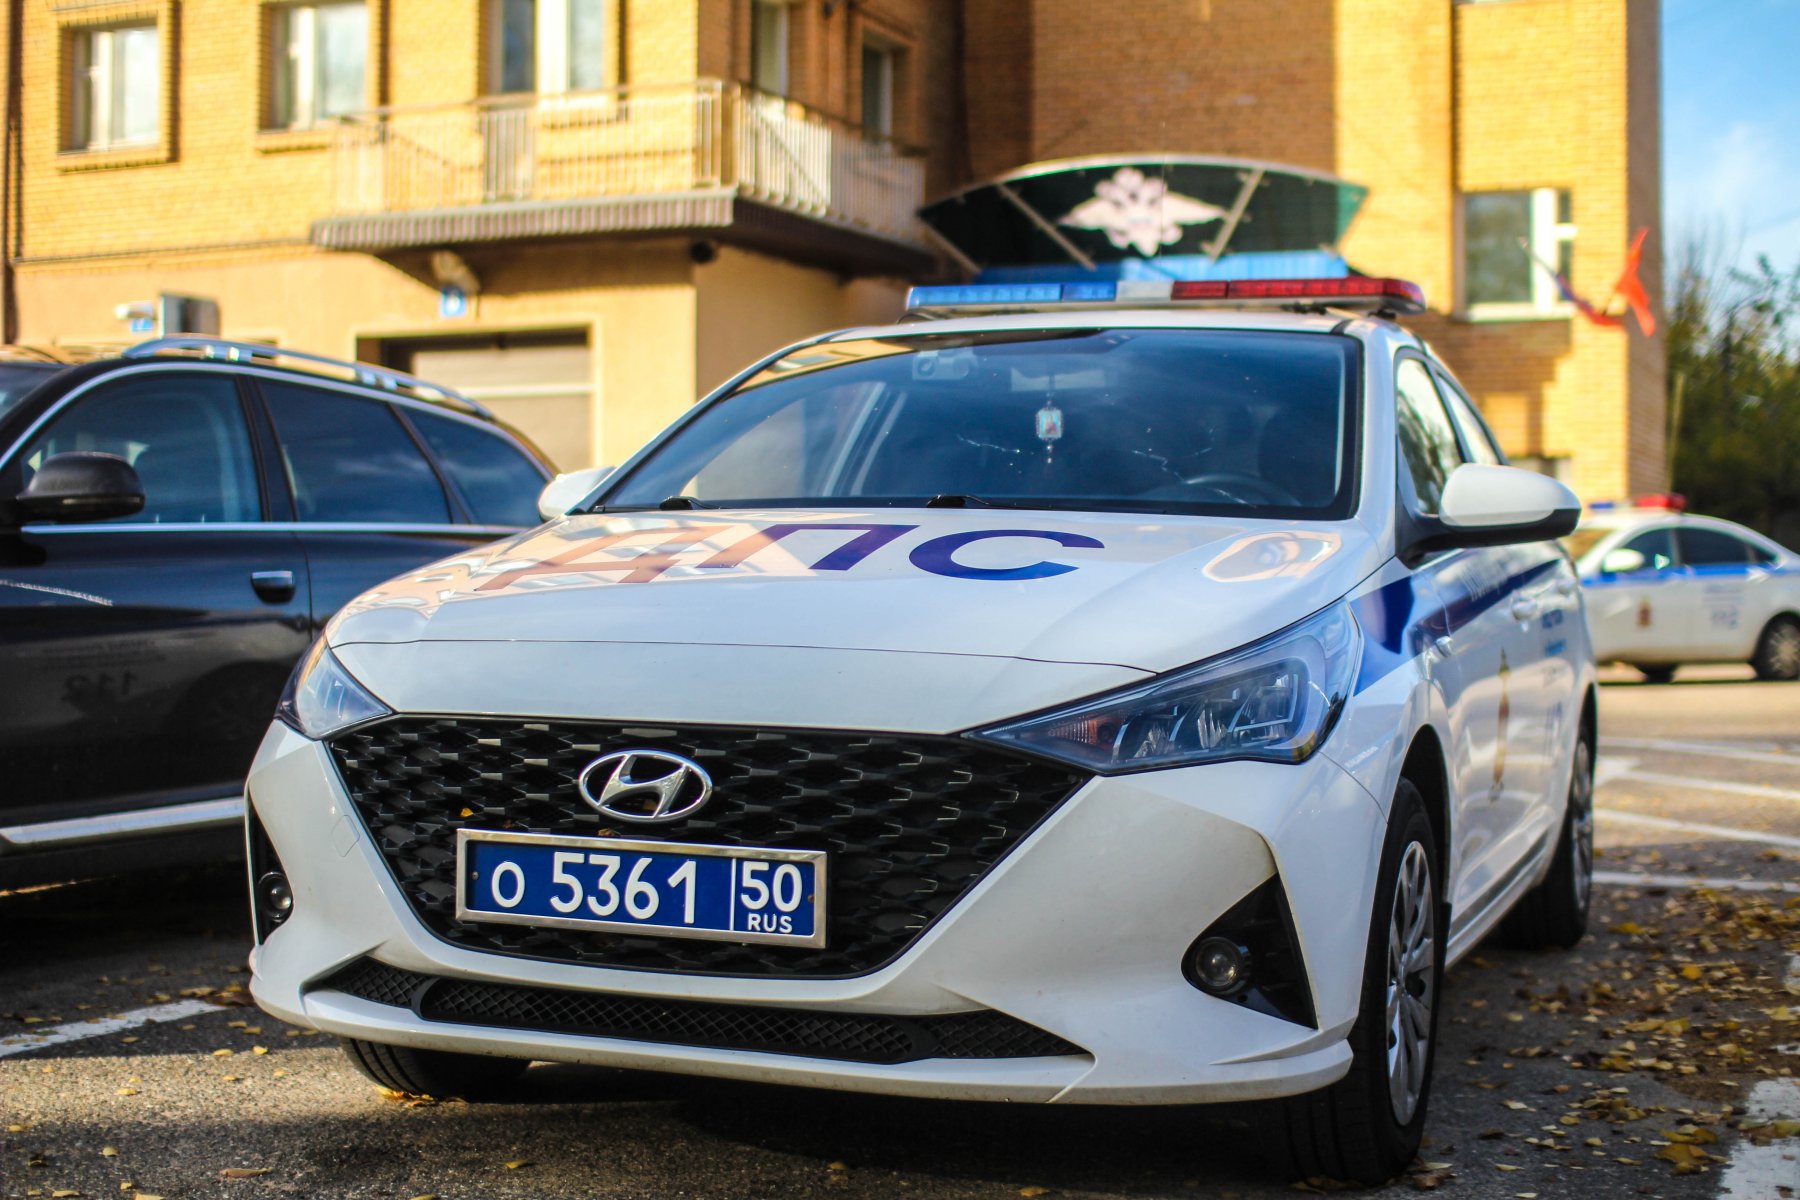 Протаранившего пять автомобилей на парковке дома в Солнечногорске задержали